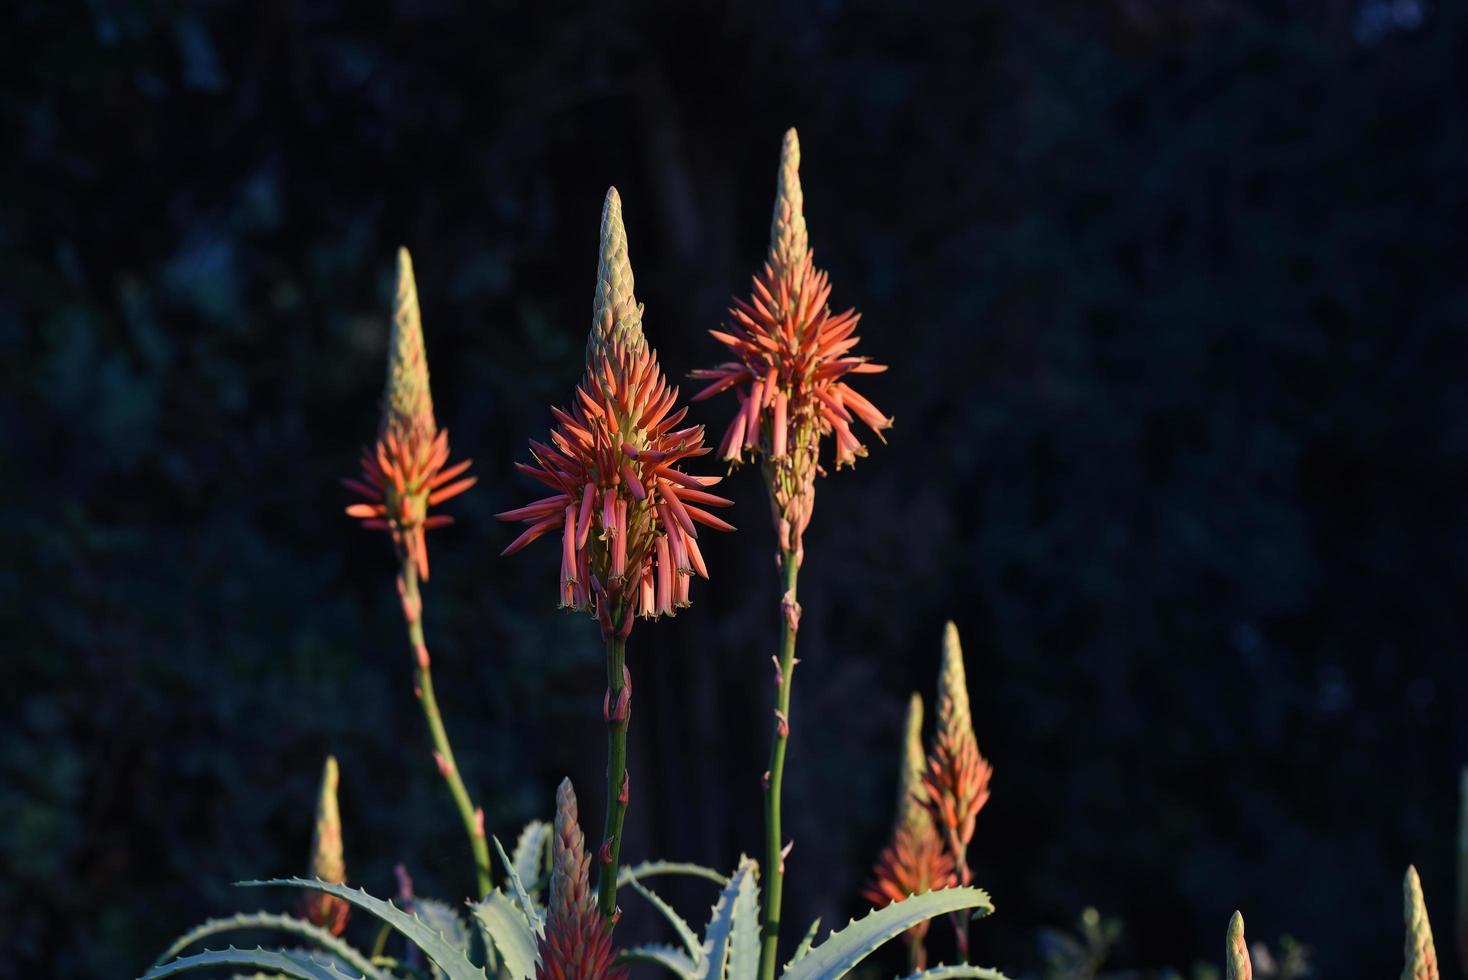 wilde Aloe-Pflanze mit blühenden Blüten foto